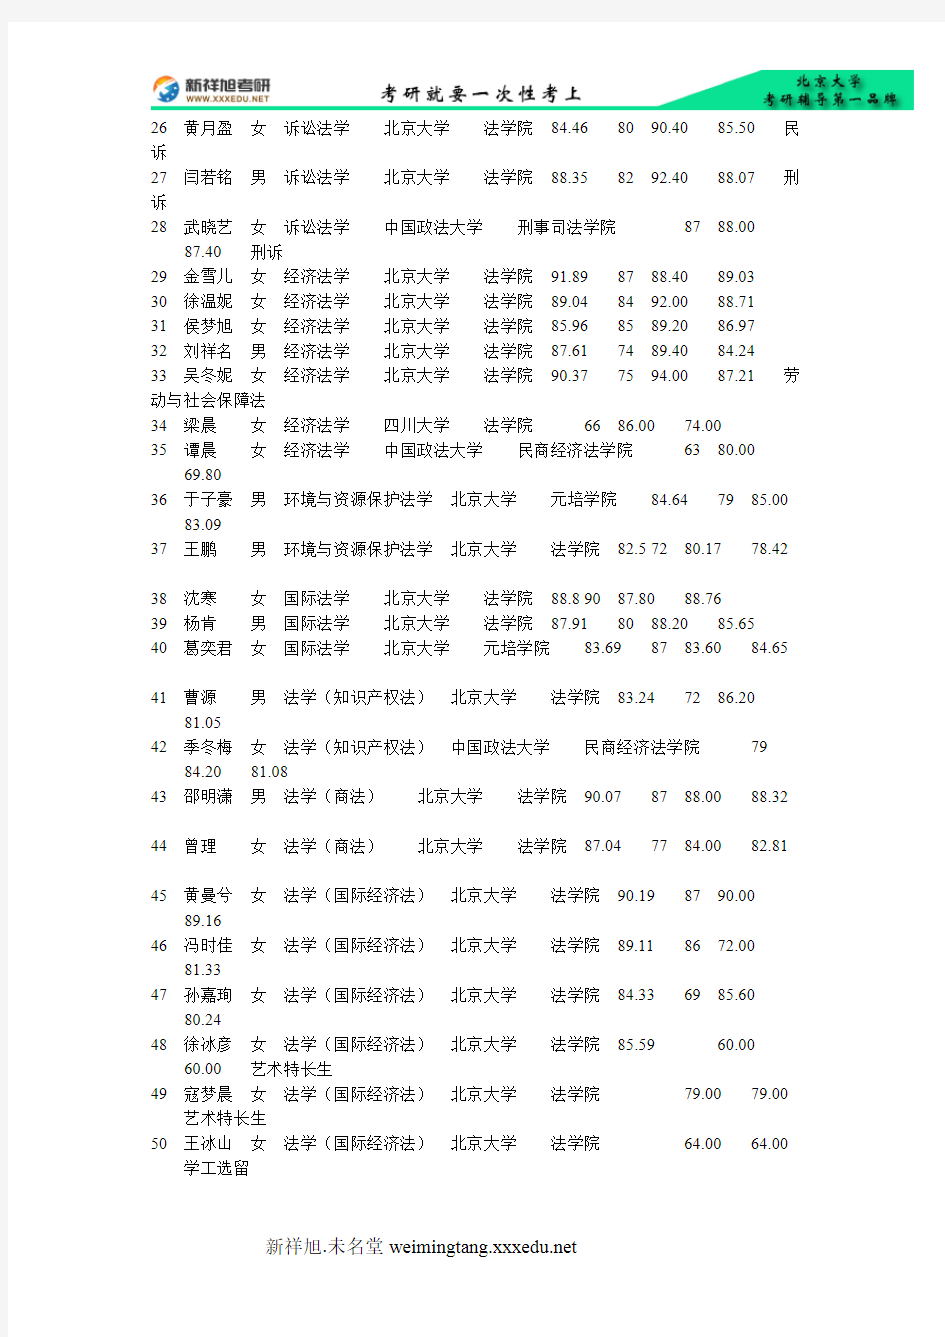 北京大学法学院2015年申请推荐免试攻读法学硕士初取名单